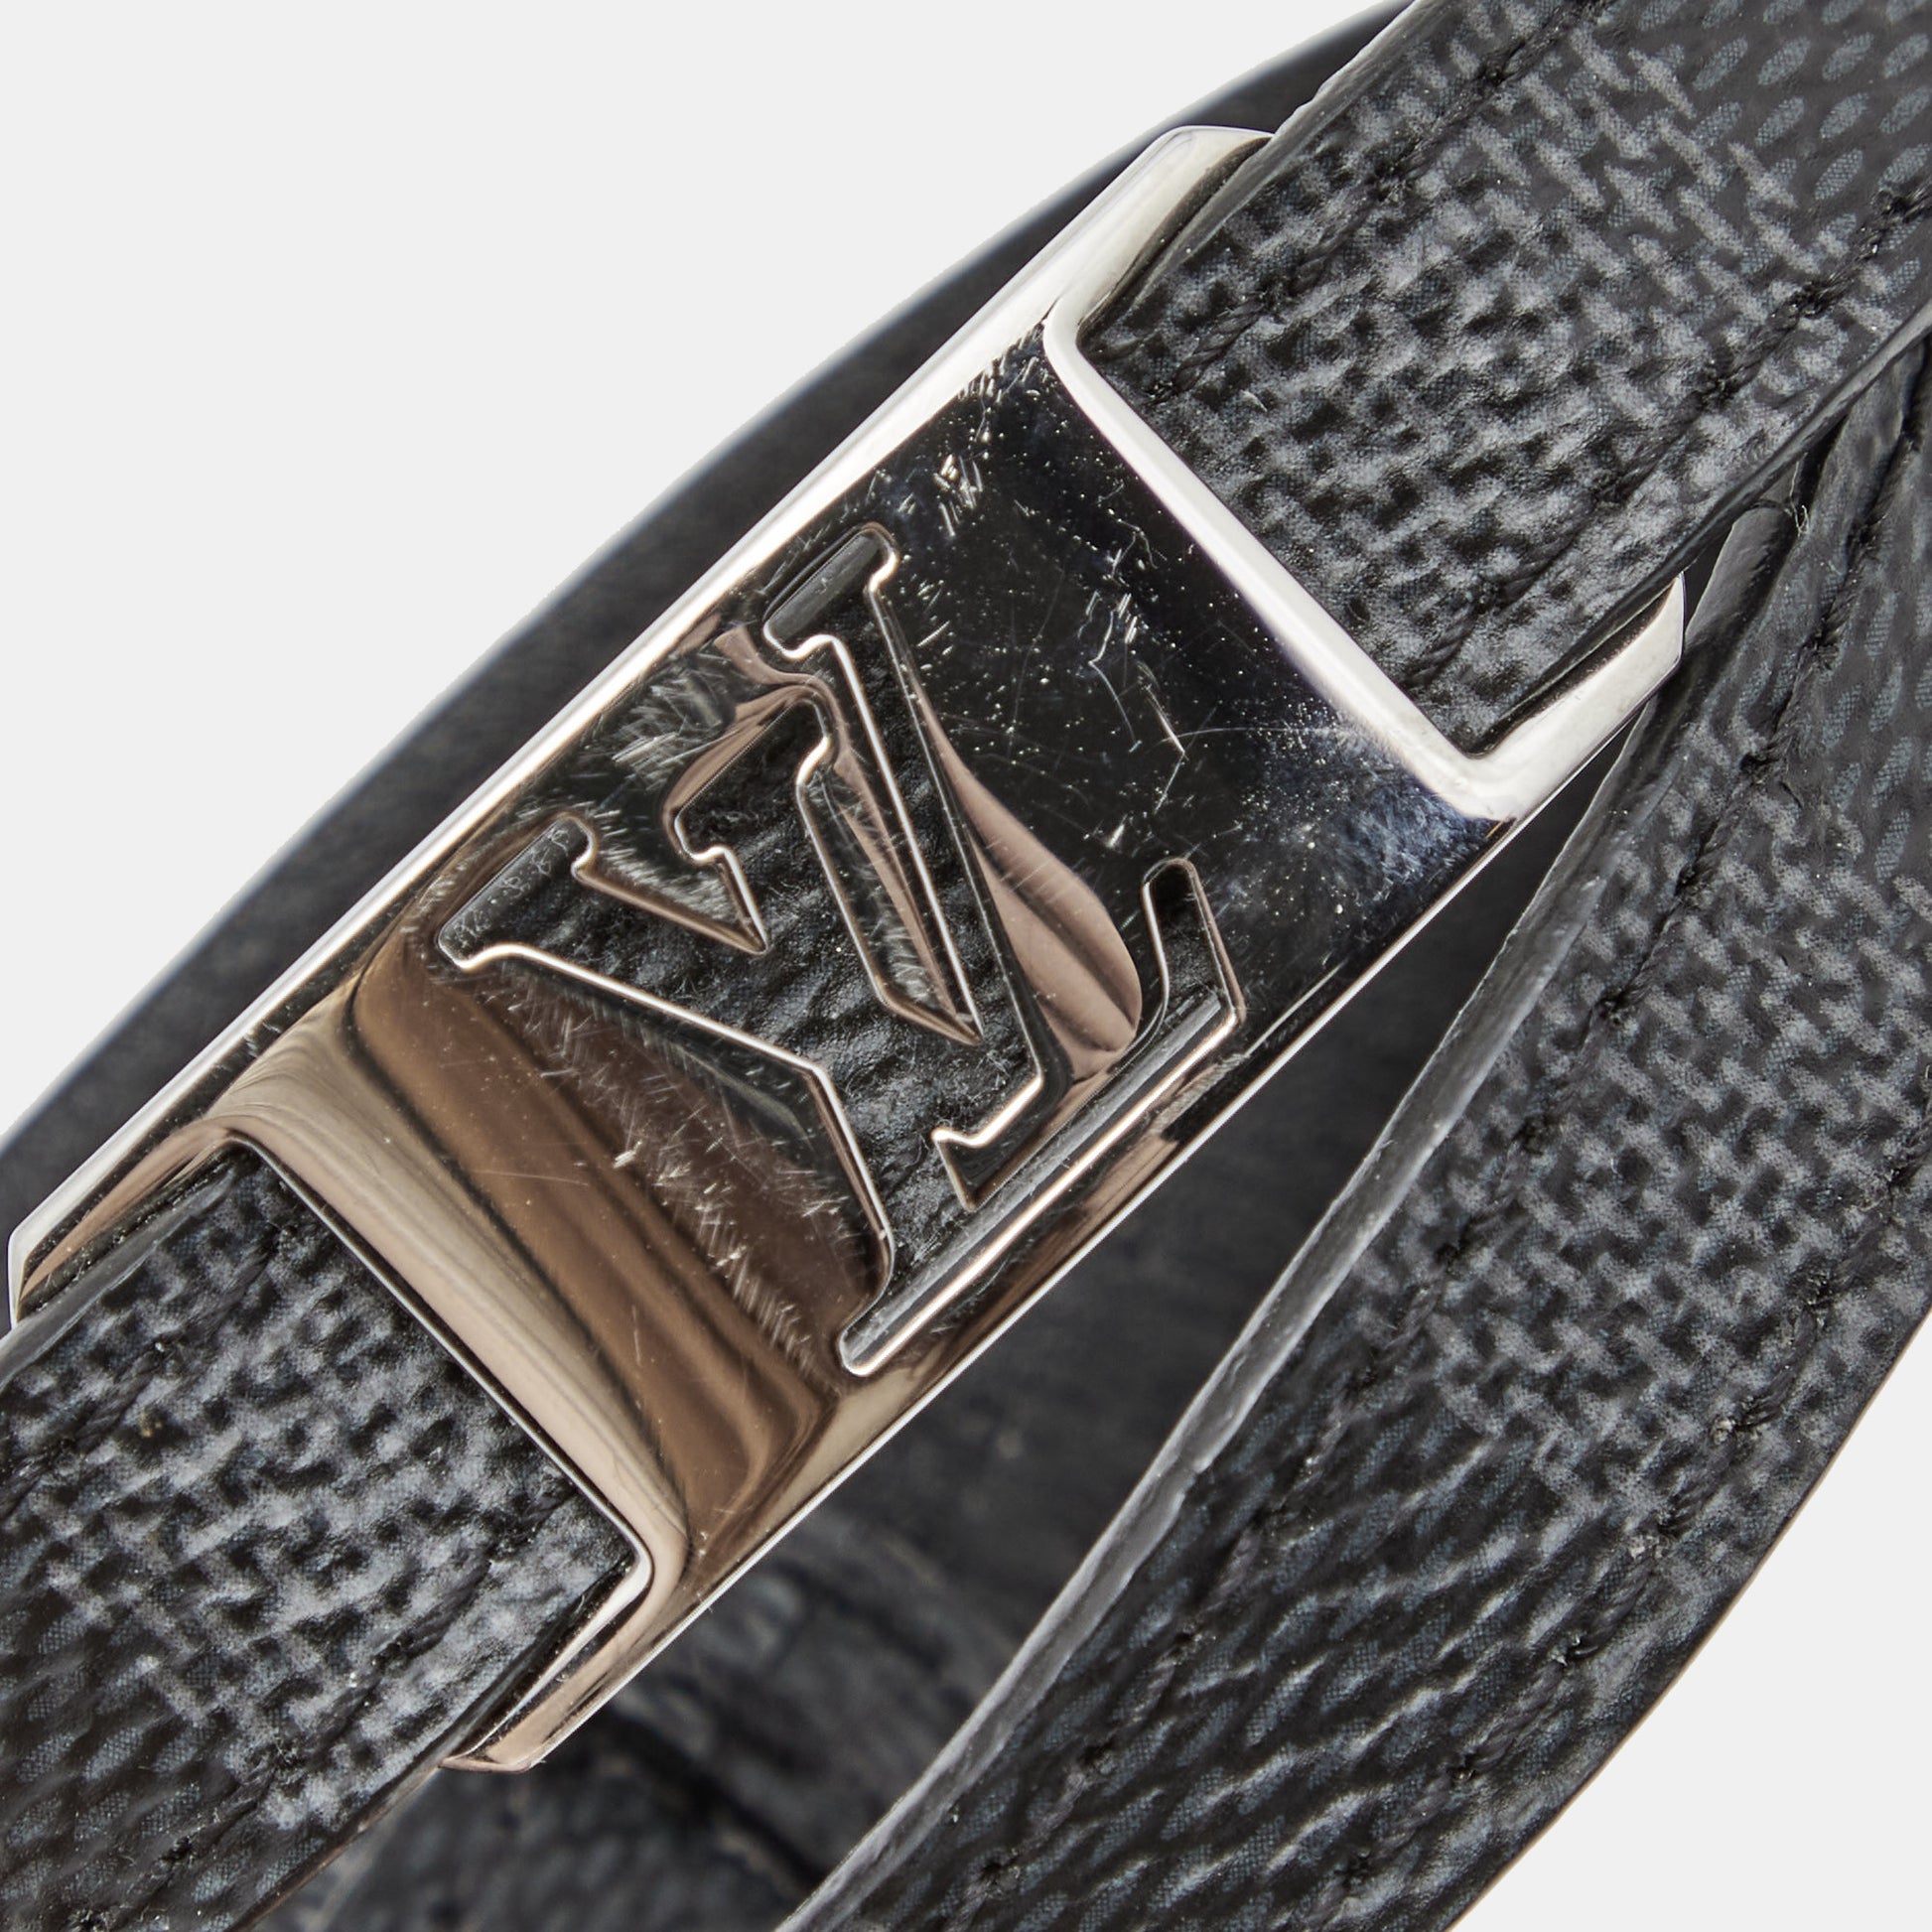 Louis Vuitton Damier Graphite Silver Tone Sign It Wrap Bracelet Louis  Vuitton